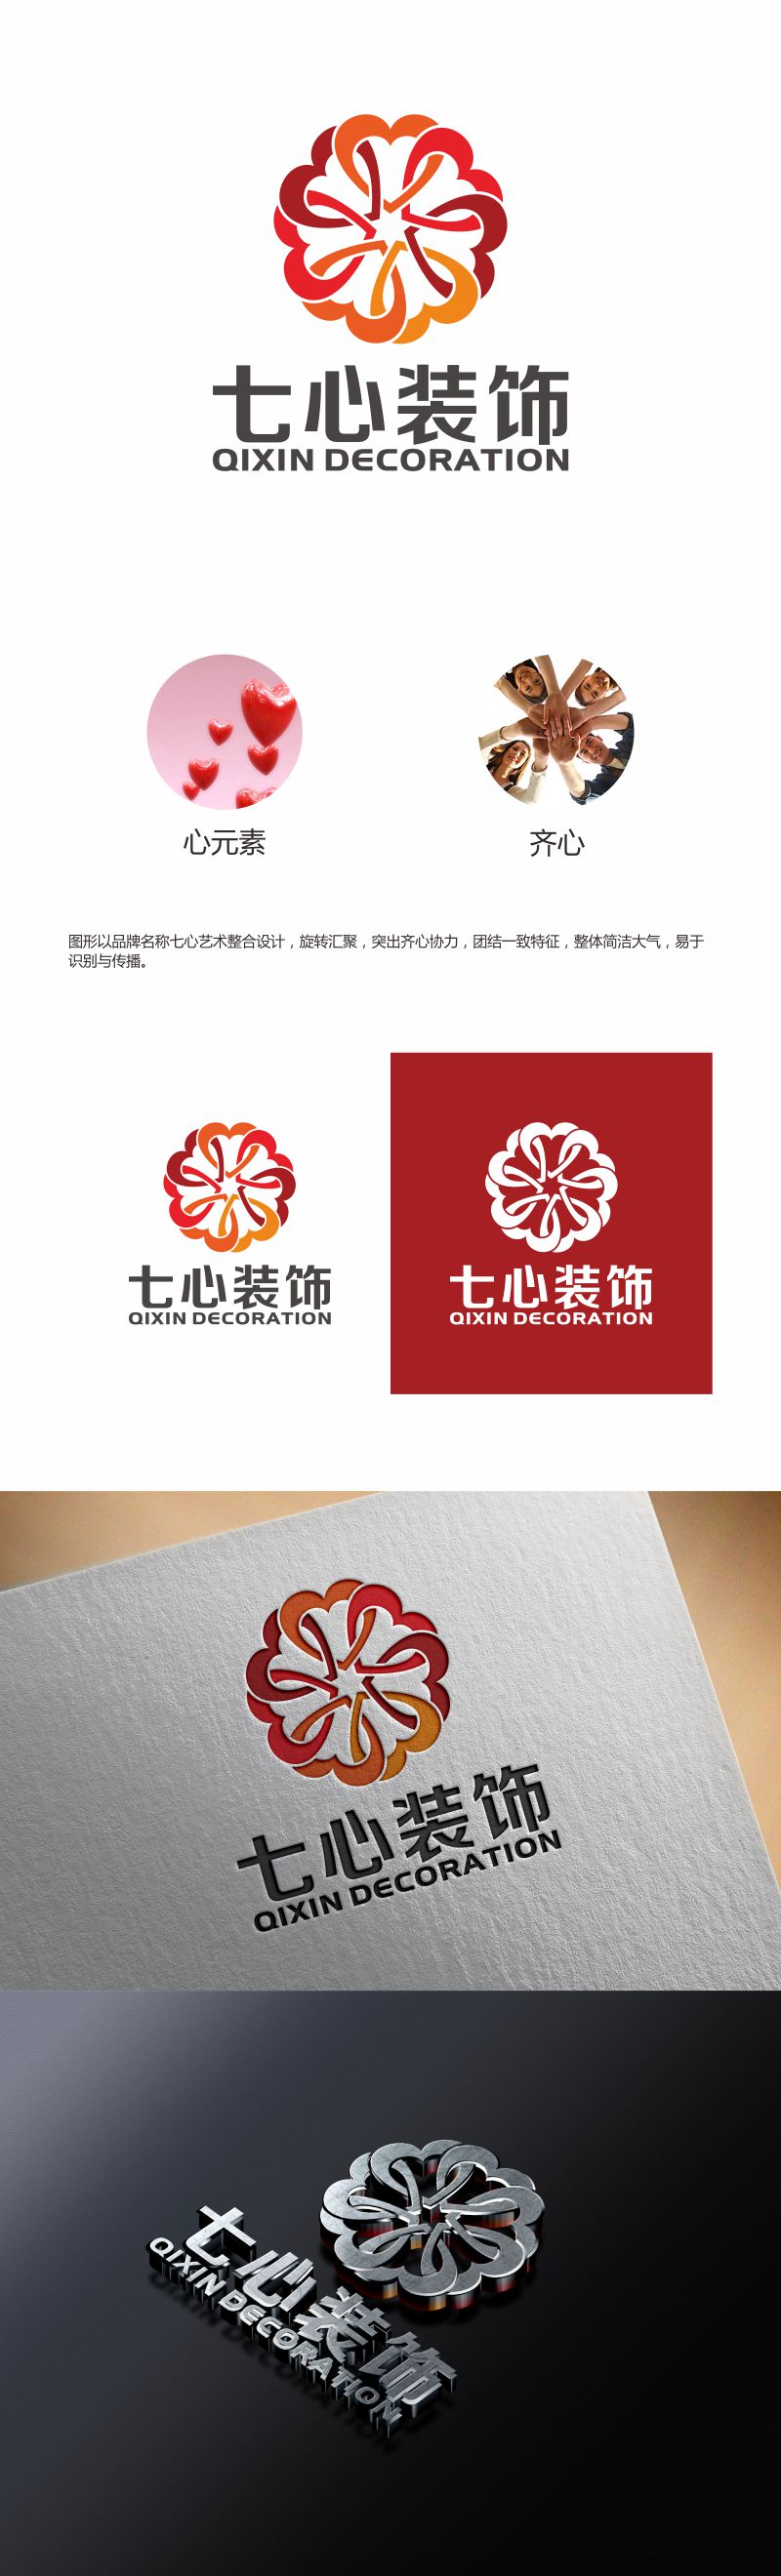 何嘉健的昆明七心装饰设计有限公司logo设计